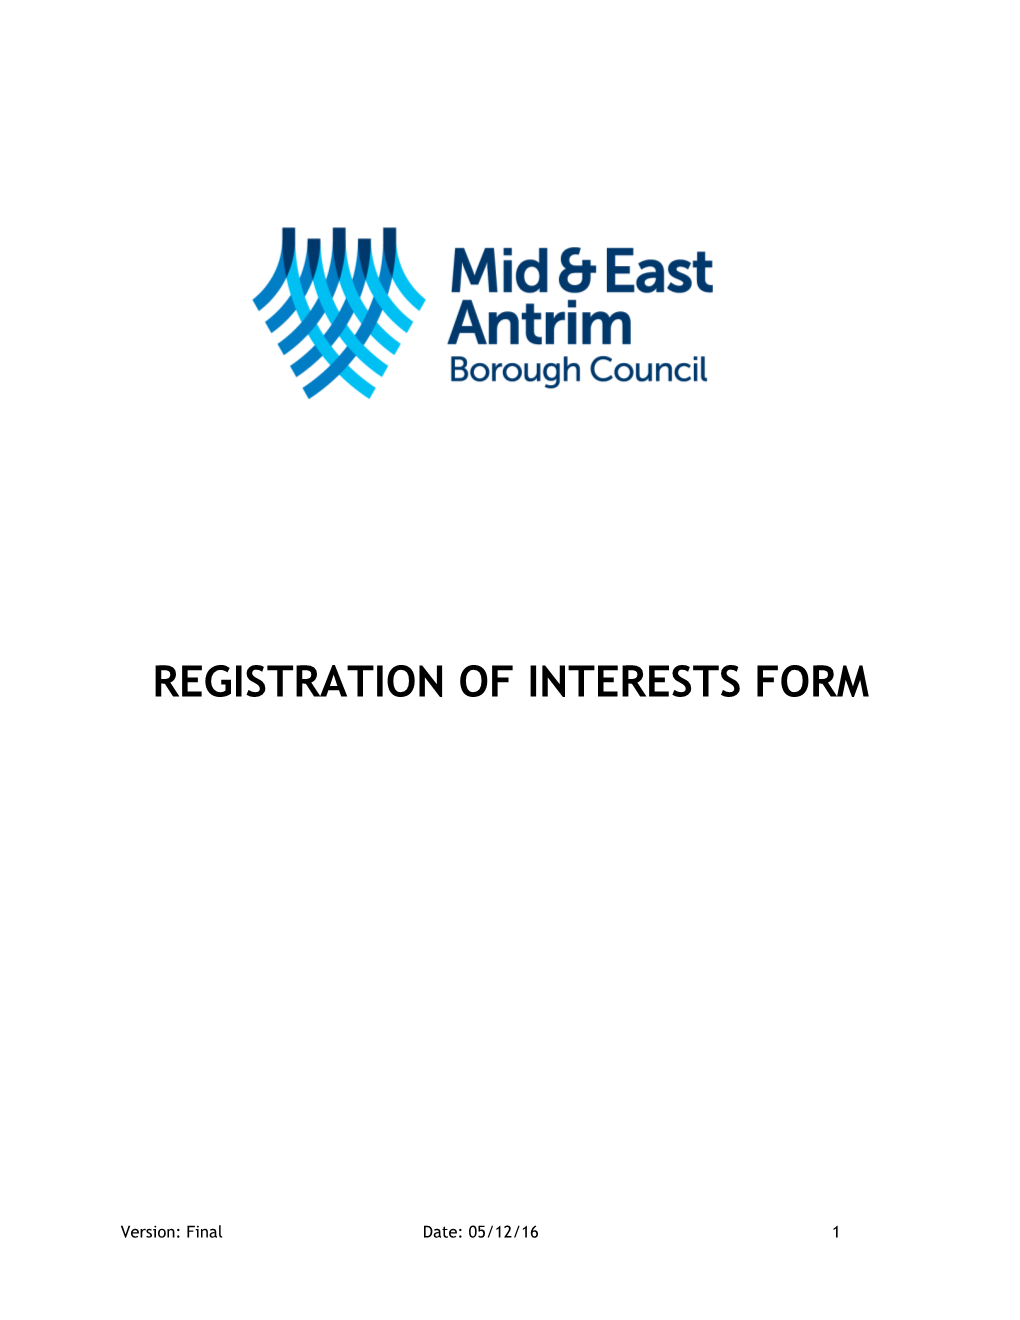 Register of Interests